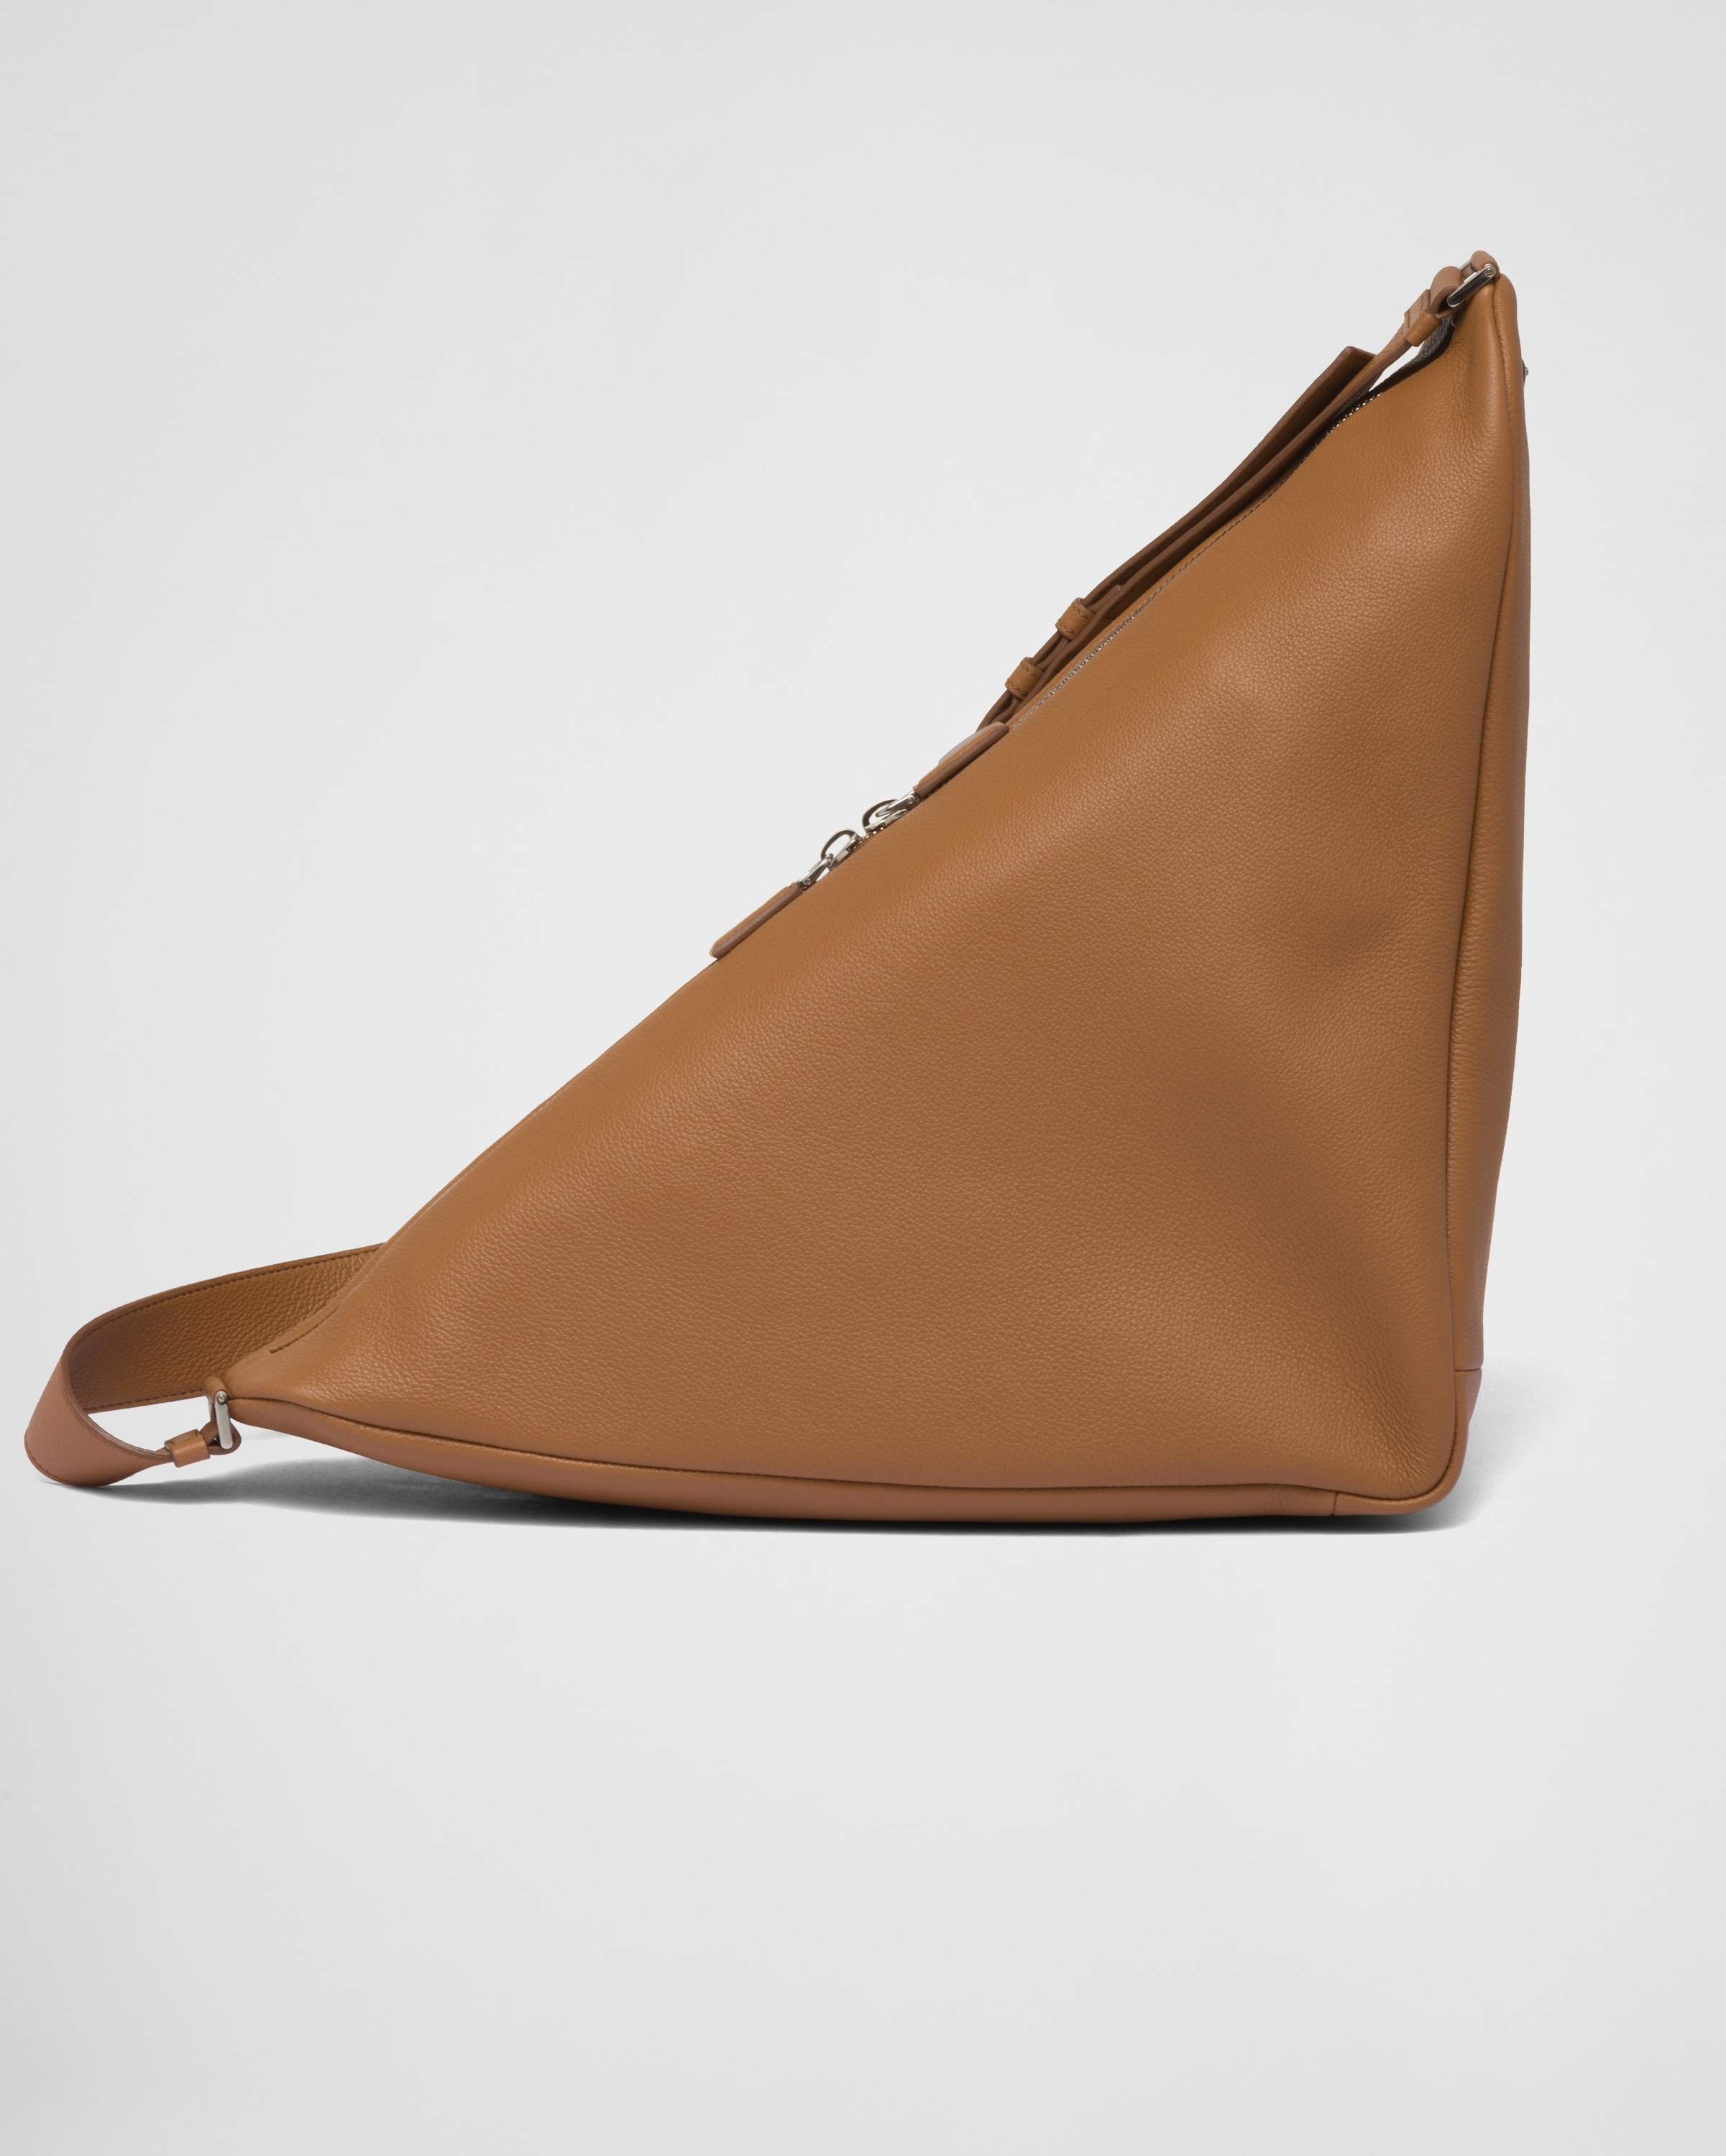 Large leather Prada Triangle bag - 4